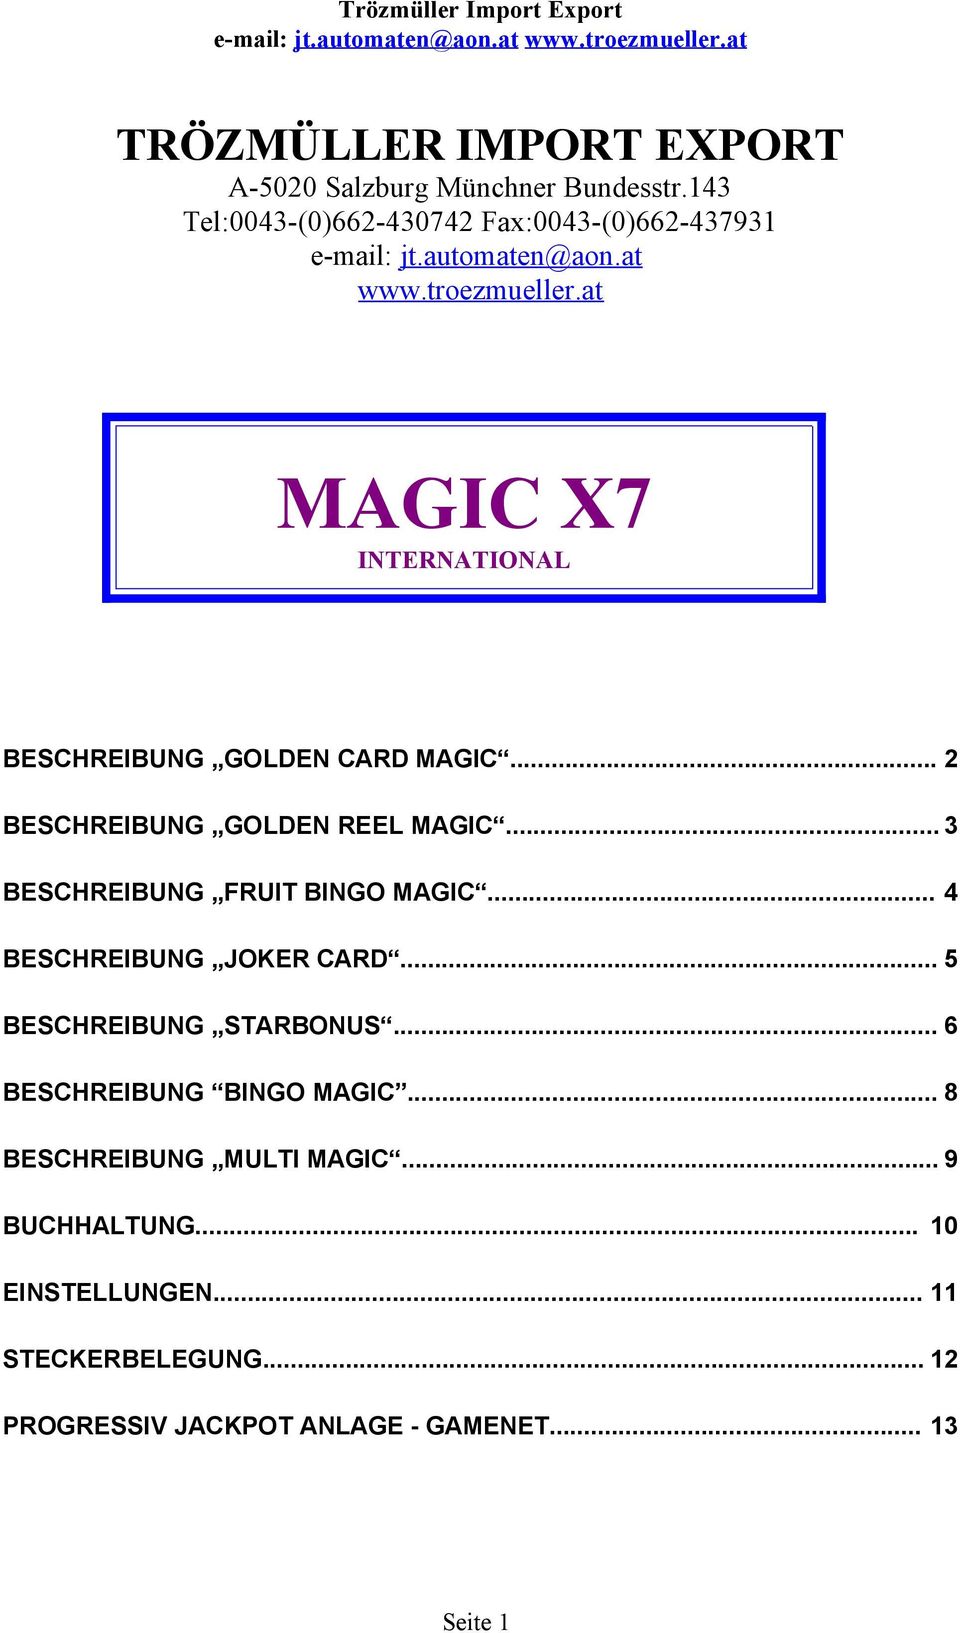 .. 3 BESCHREIBUNG FRUIT BINGO MAGIC... BESCHREIBUNG JOKER CARD... 5 BESCHREIBUNG STARBONUS... 6 BESCHREIBUNG BINGO MAGIC.